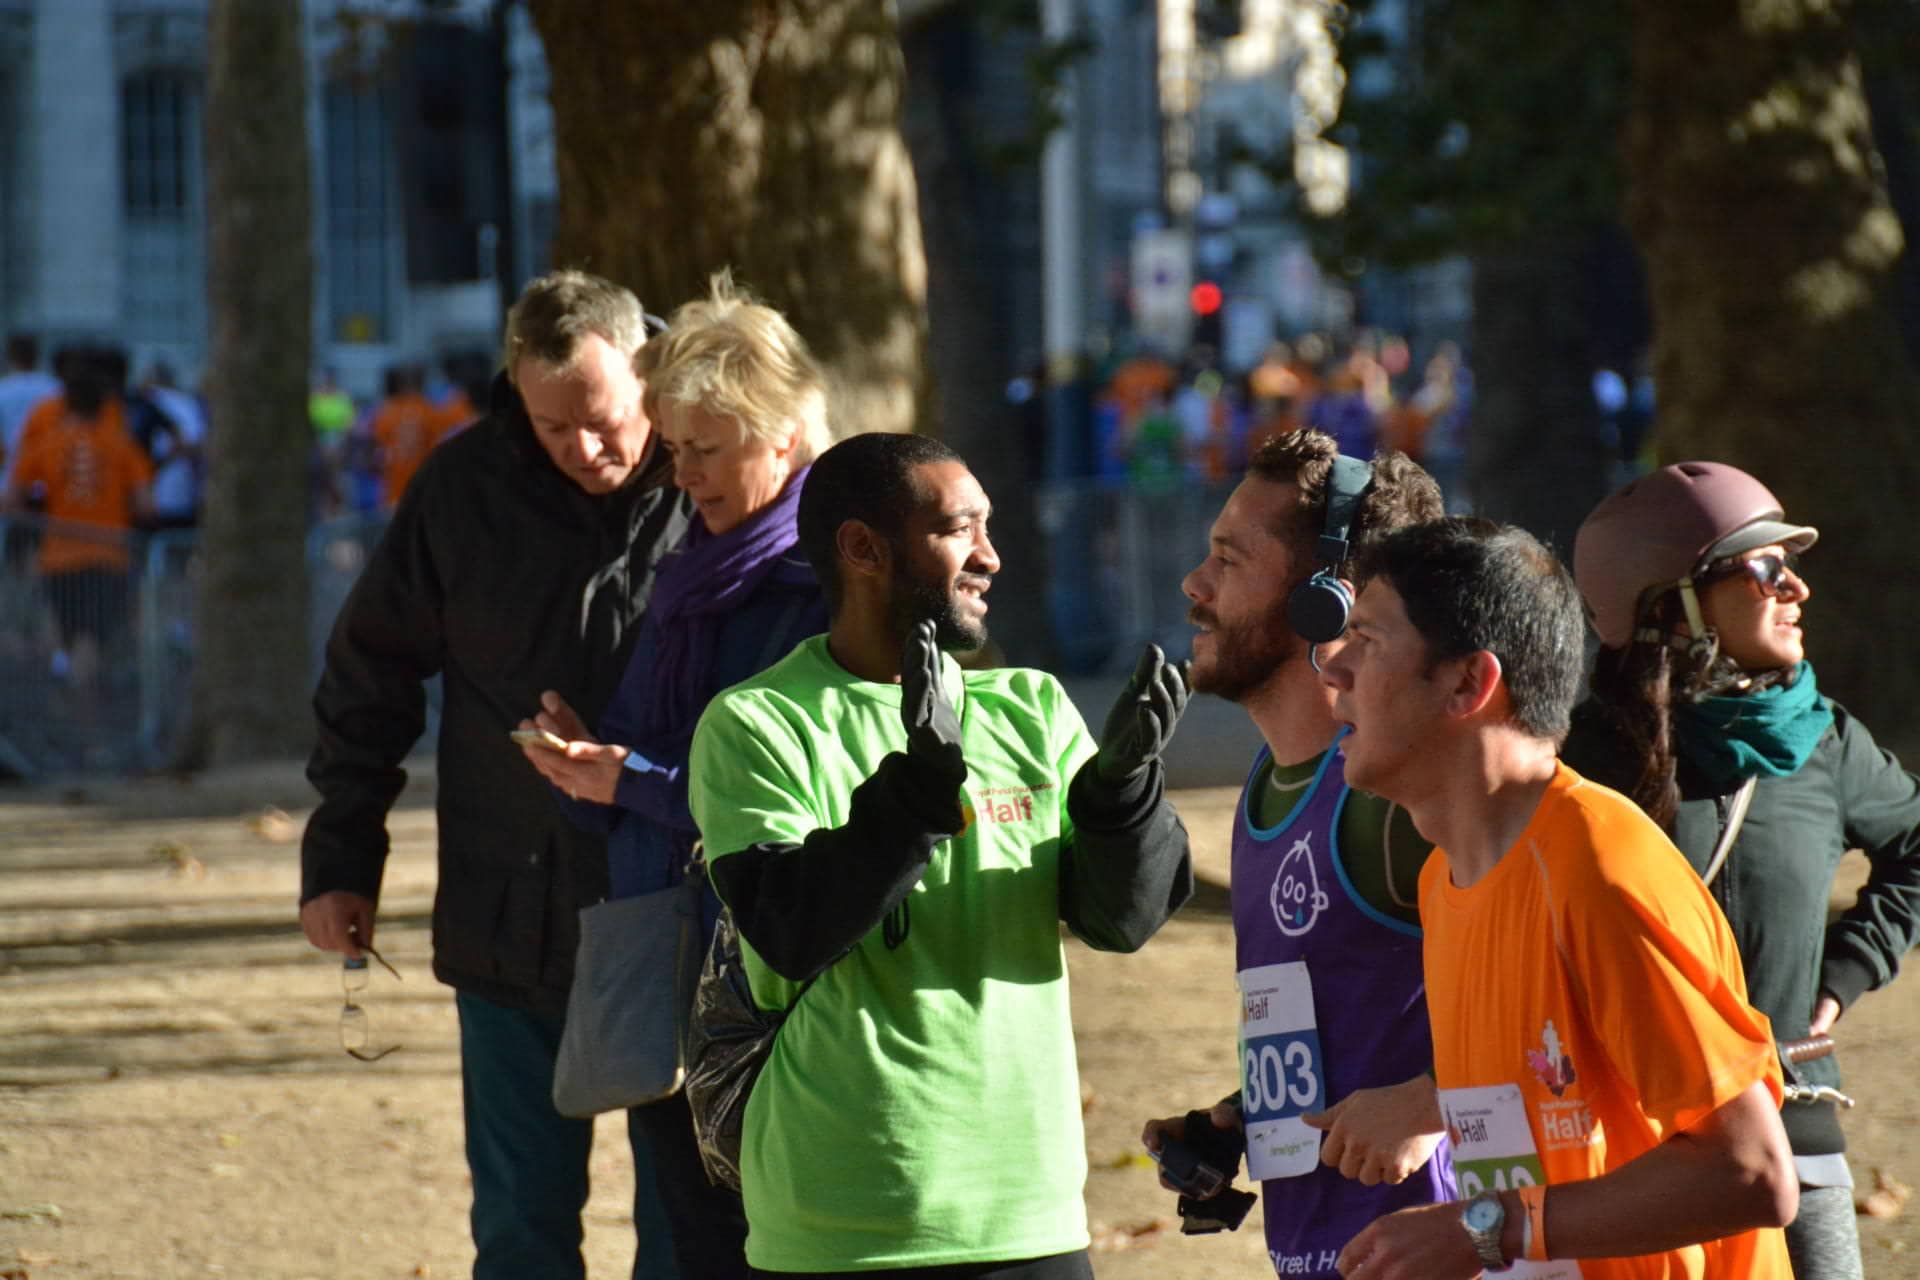 Royal Parks Half Marathon with Nike